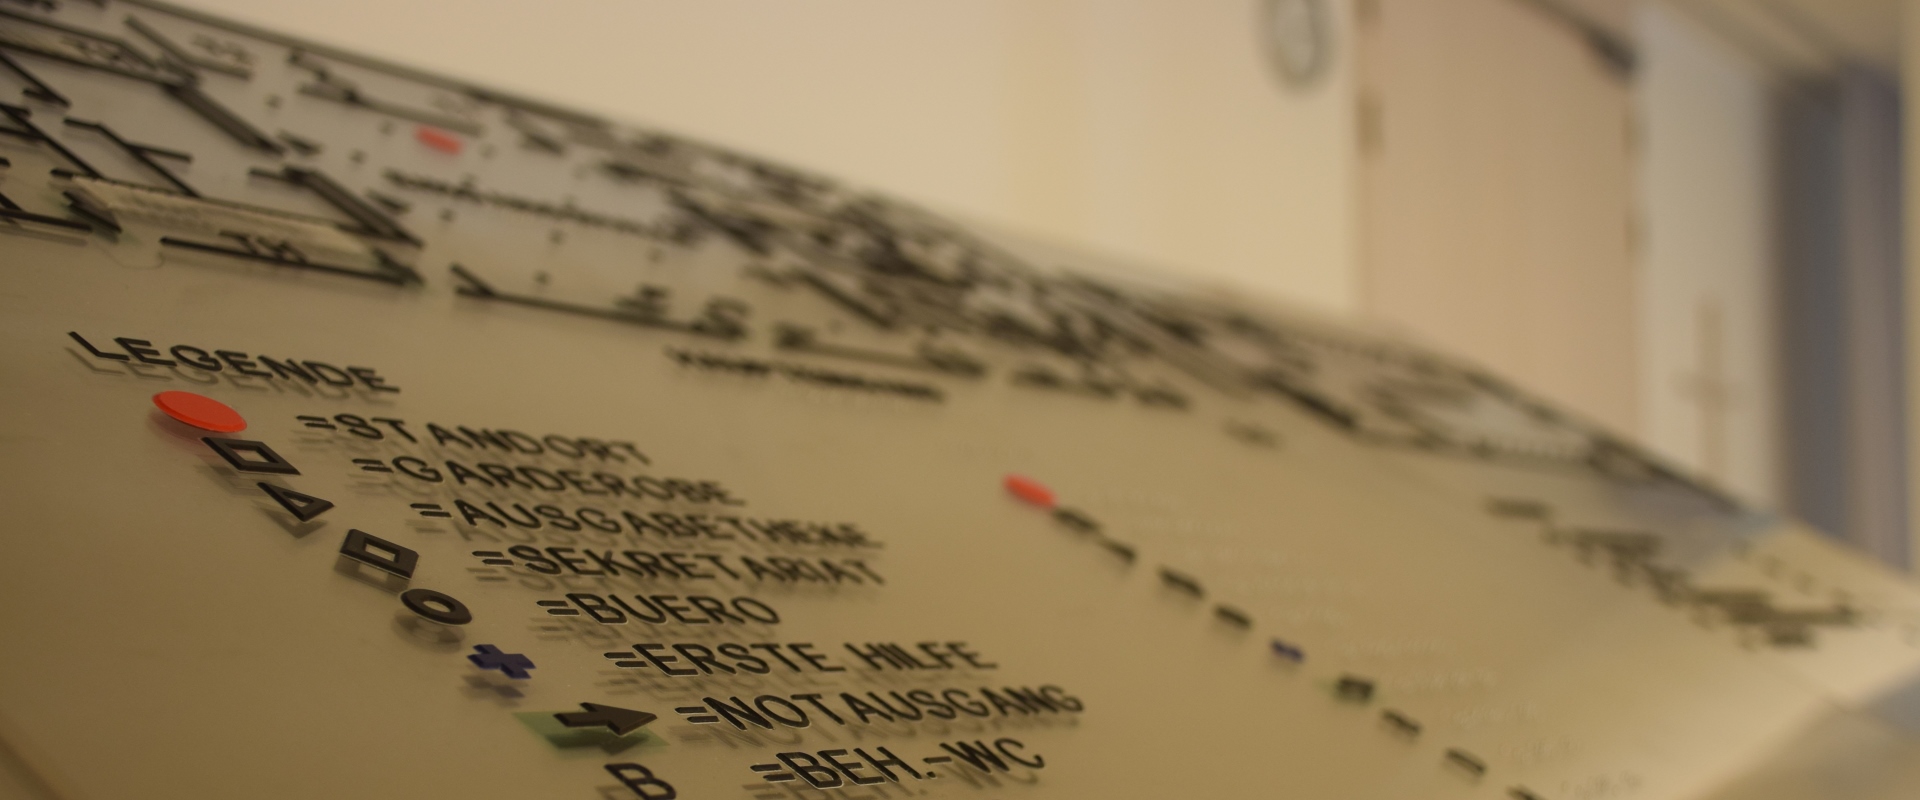 Die Informationstafeln im Altöttinger Forum sind Braille, für die Barrierefreiheit.